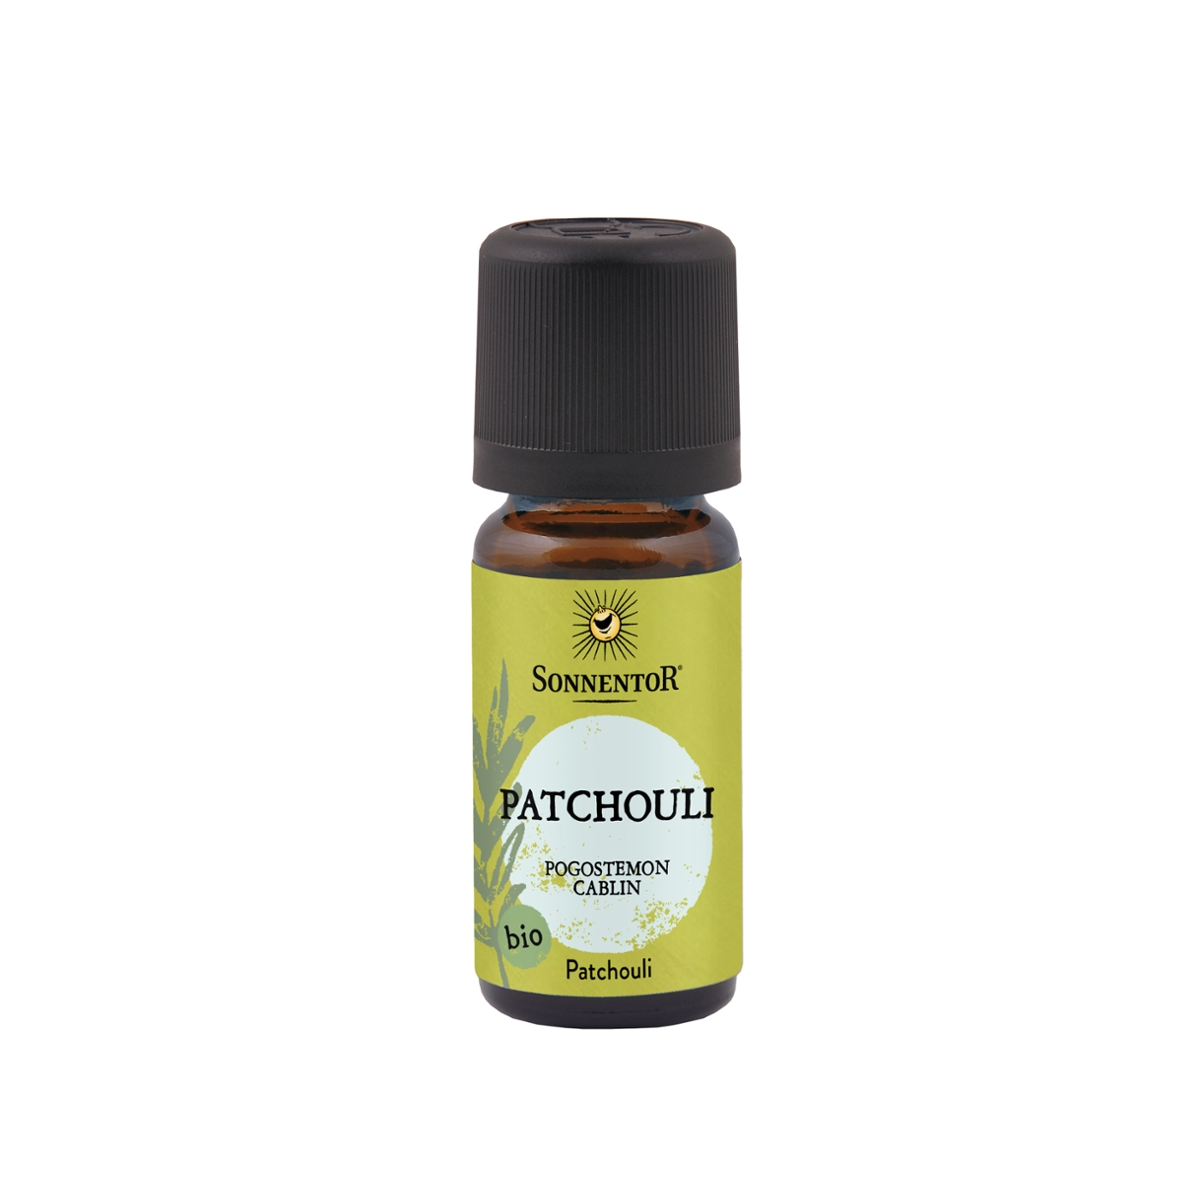 Sonnentor - Patchouli ätherisches Öl